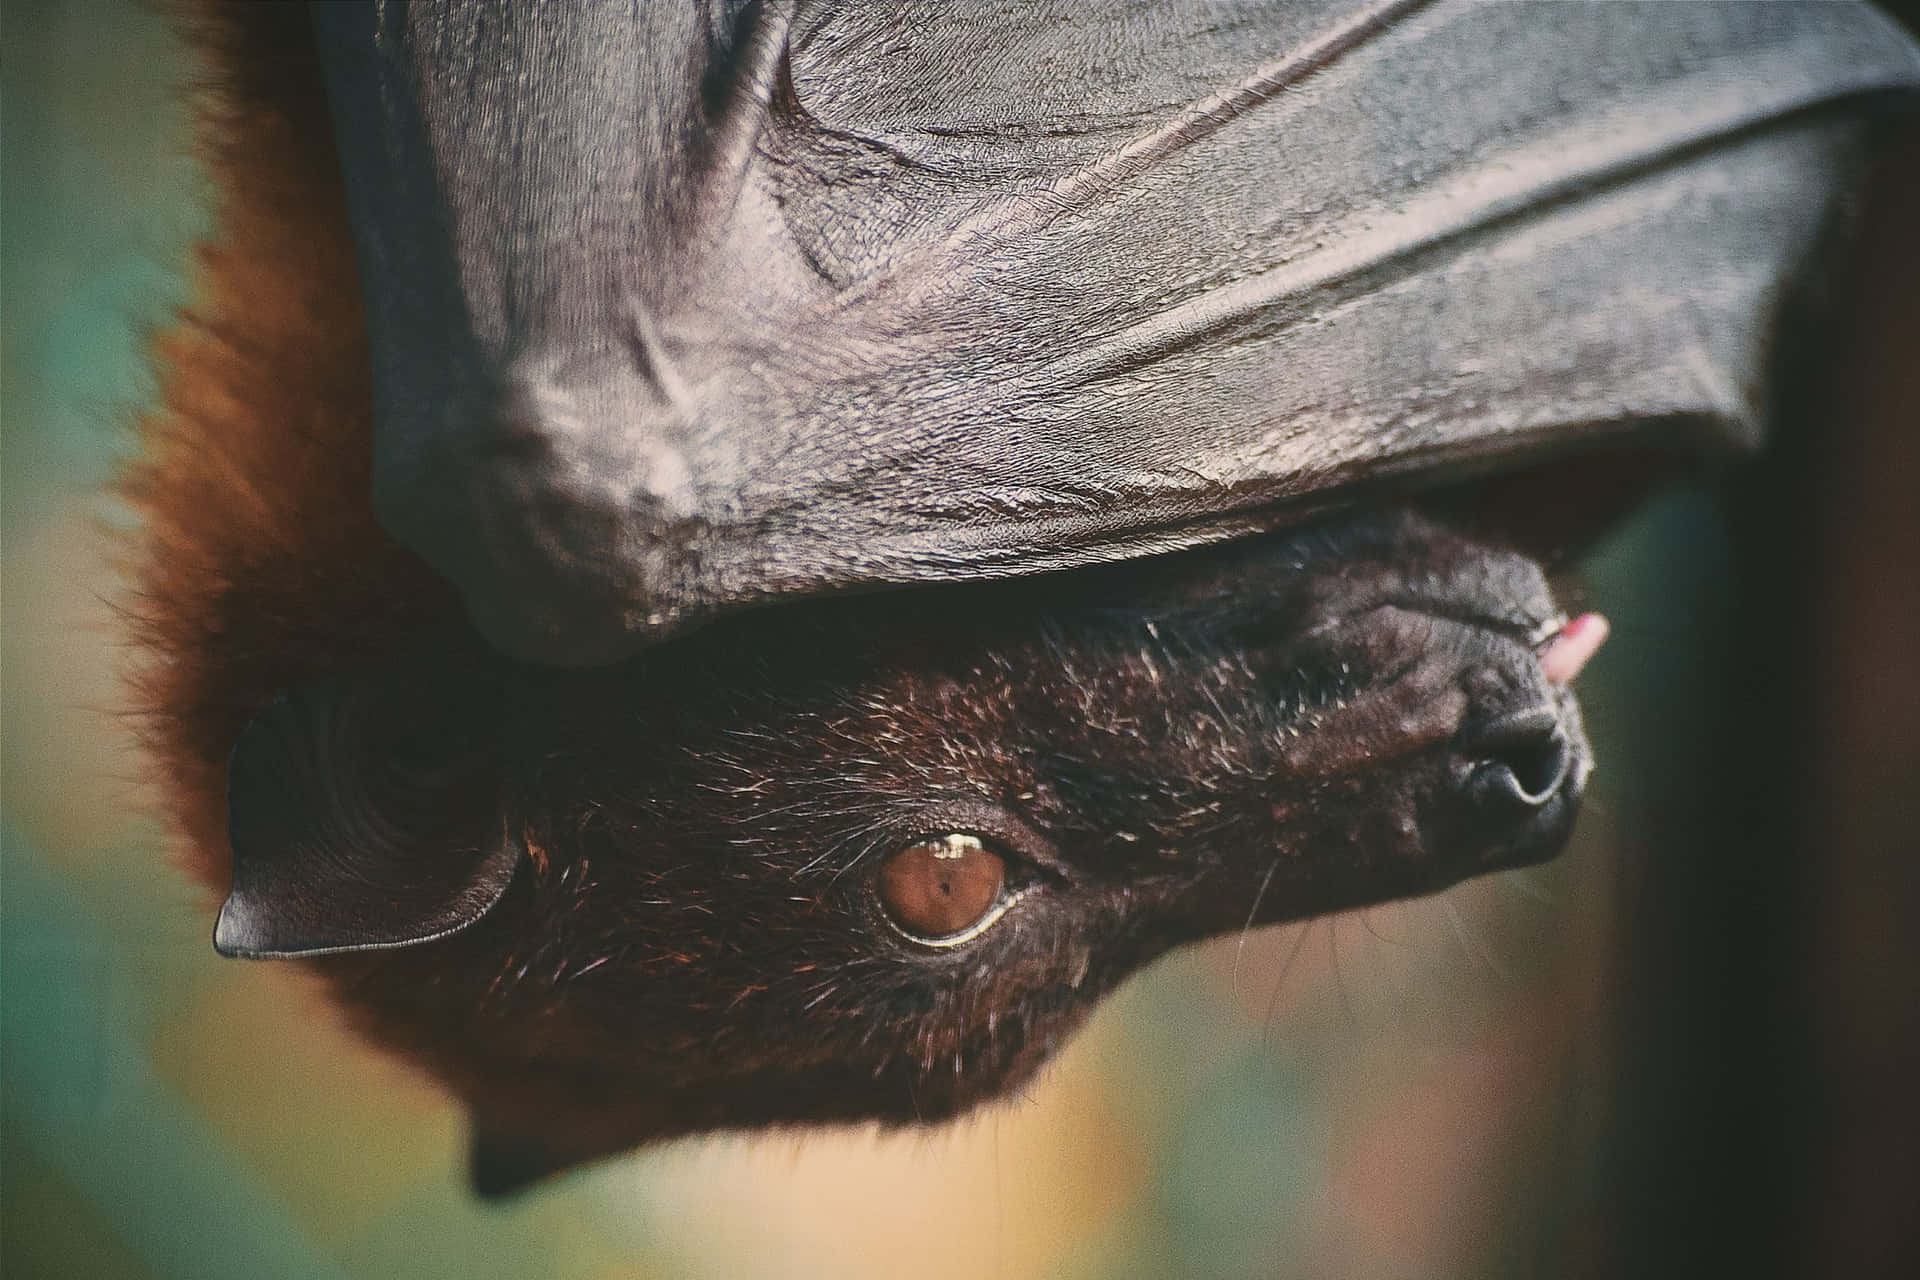 Cute Bat Billeder 2121 X 1414